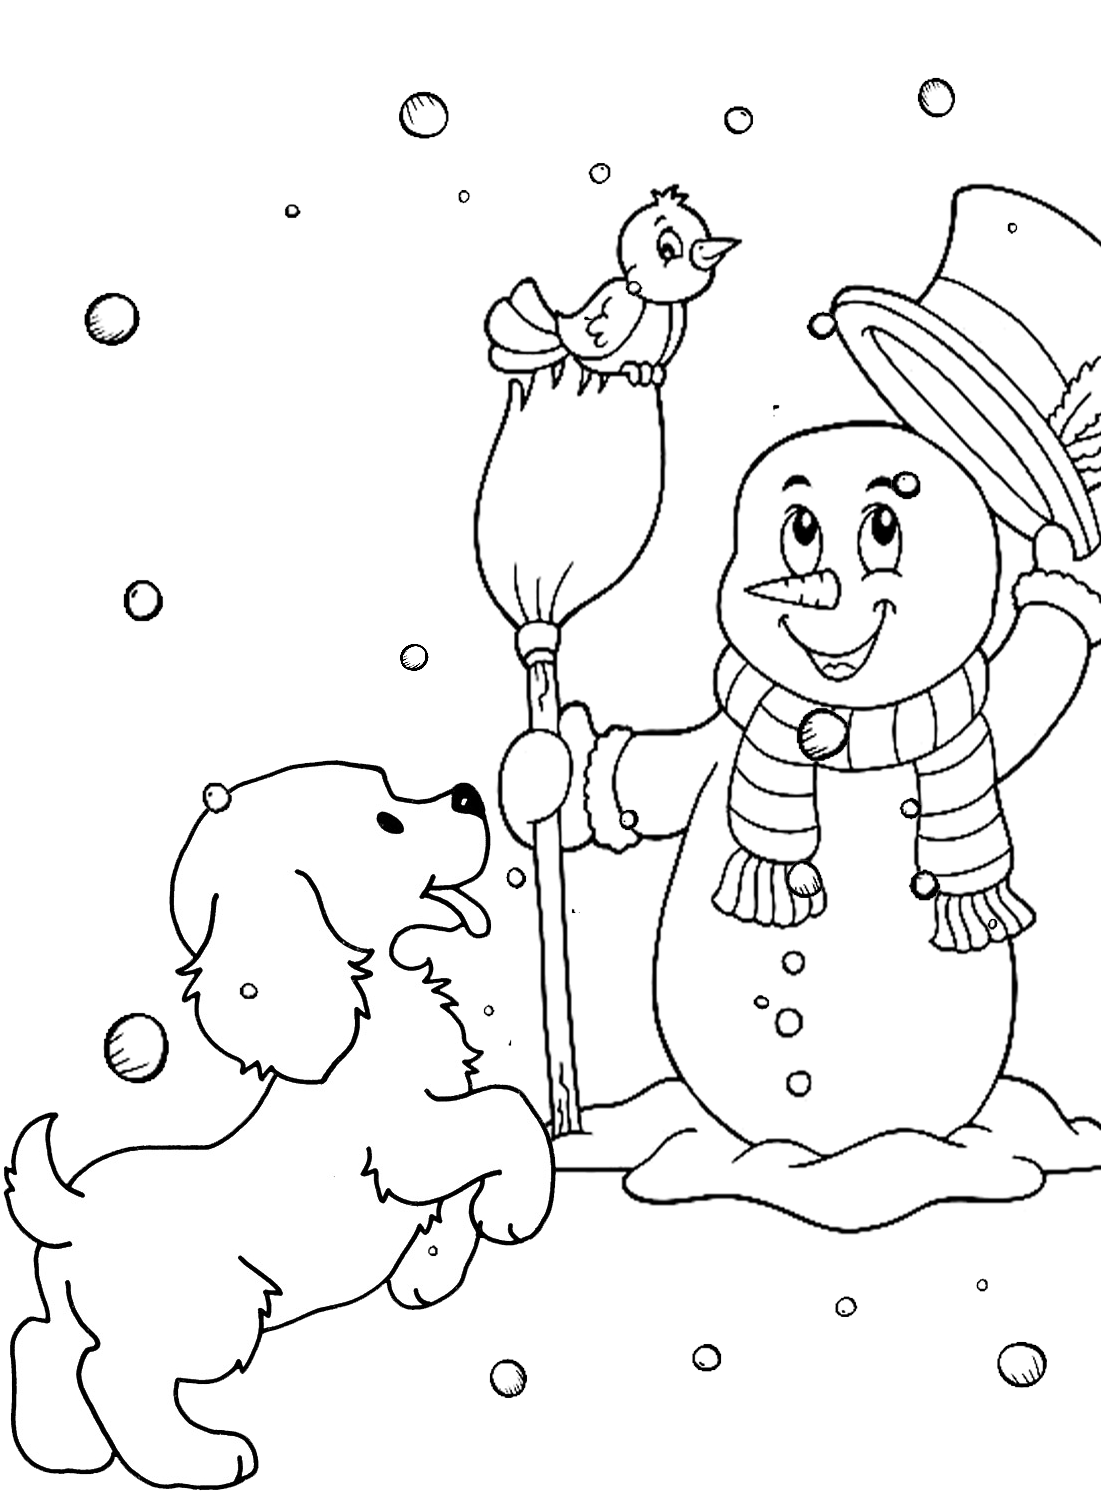 صفحة ملونة لرجل الثلج والجرو